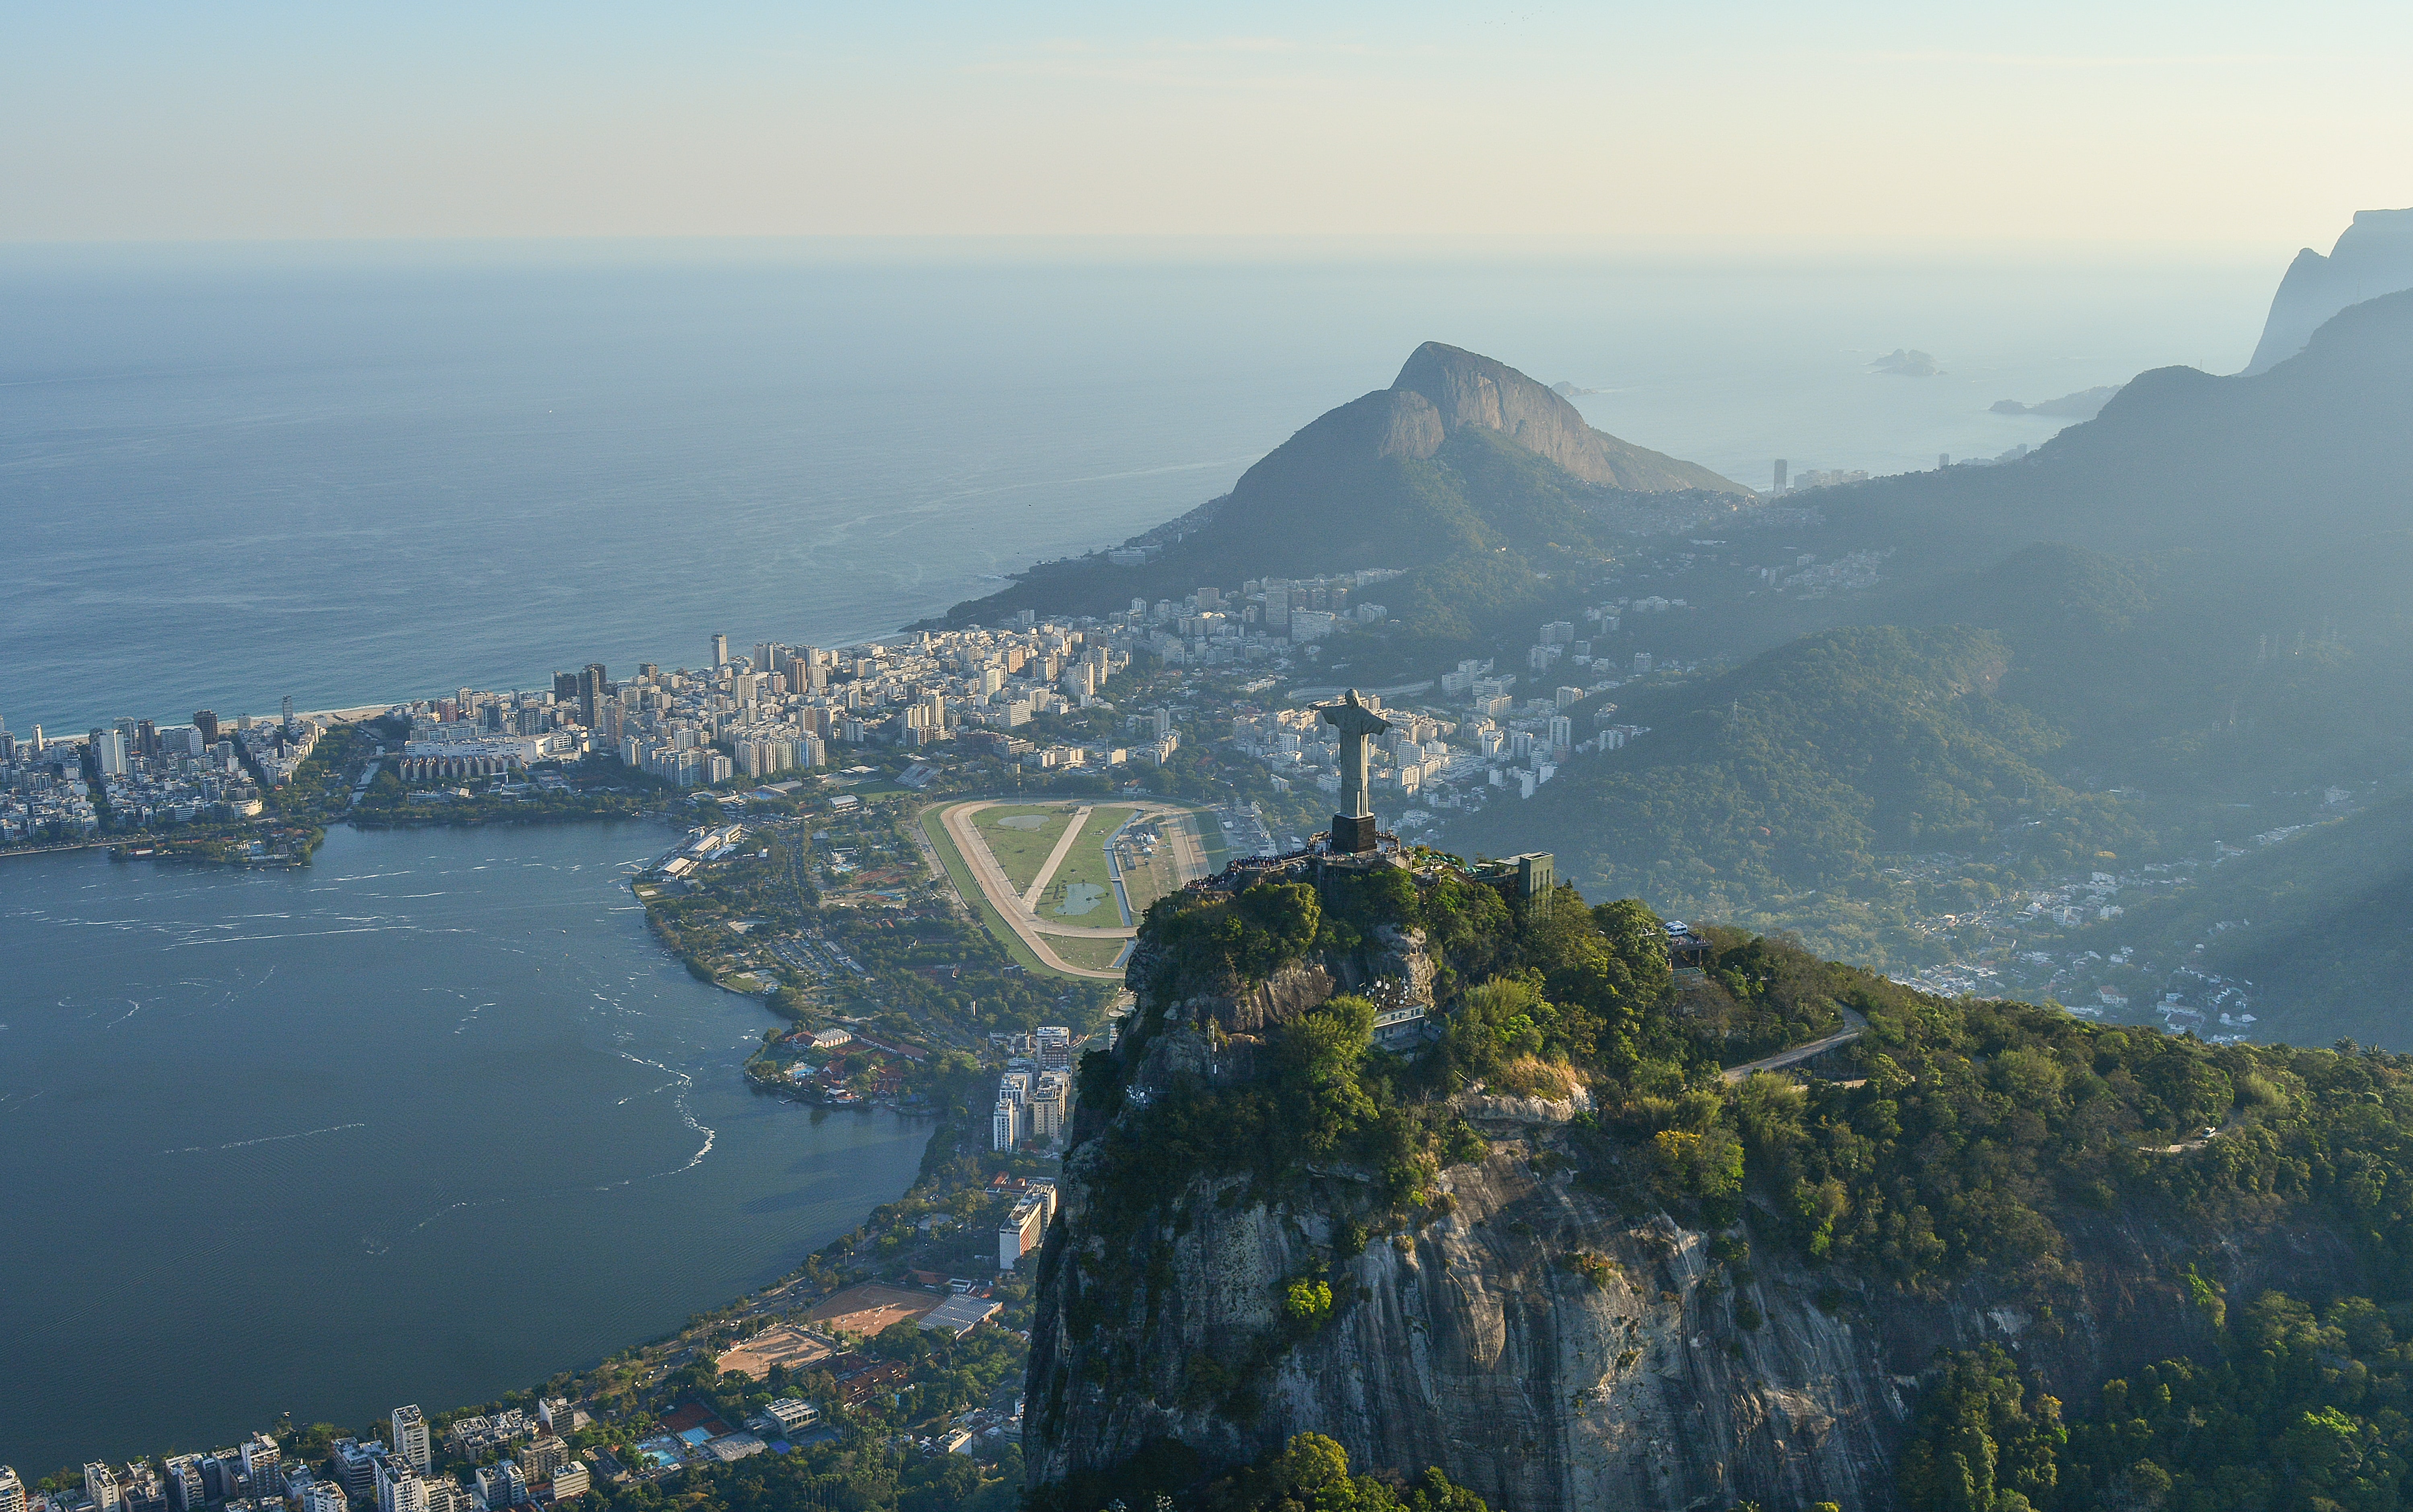 Image of the bay in Rio de Janeiro